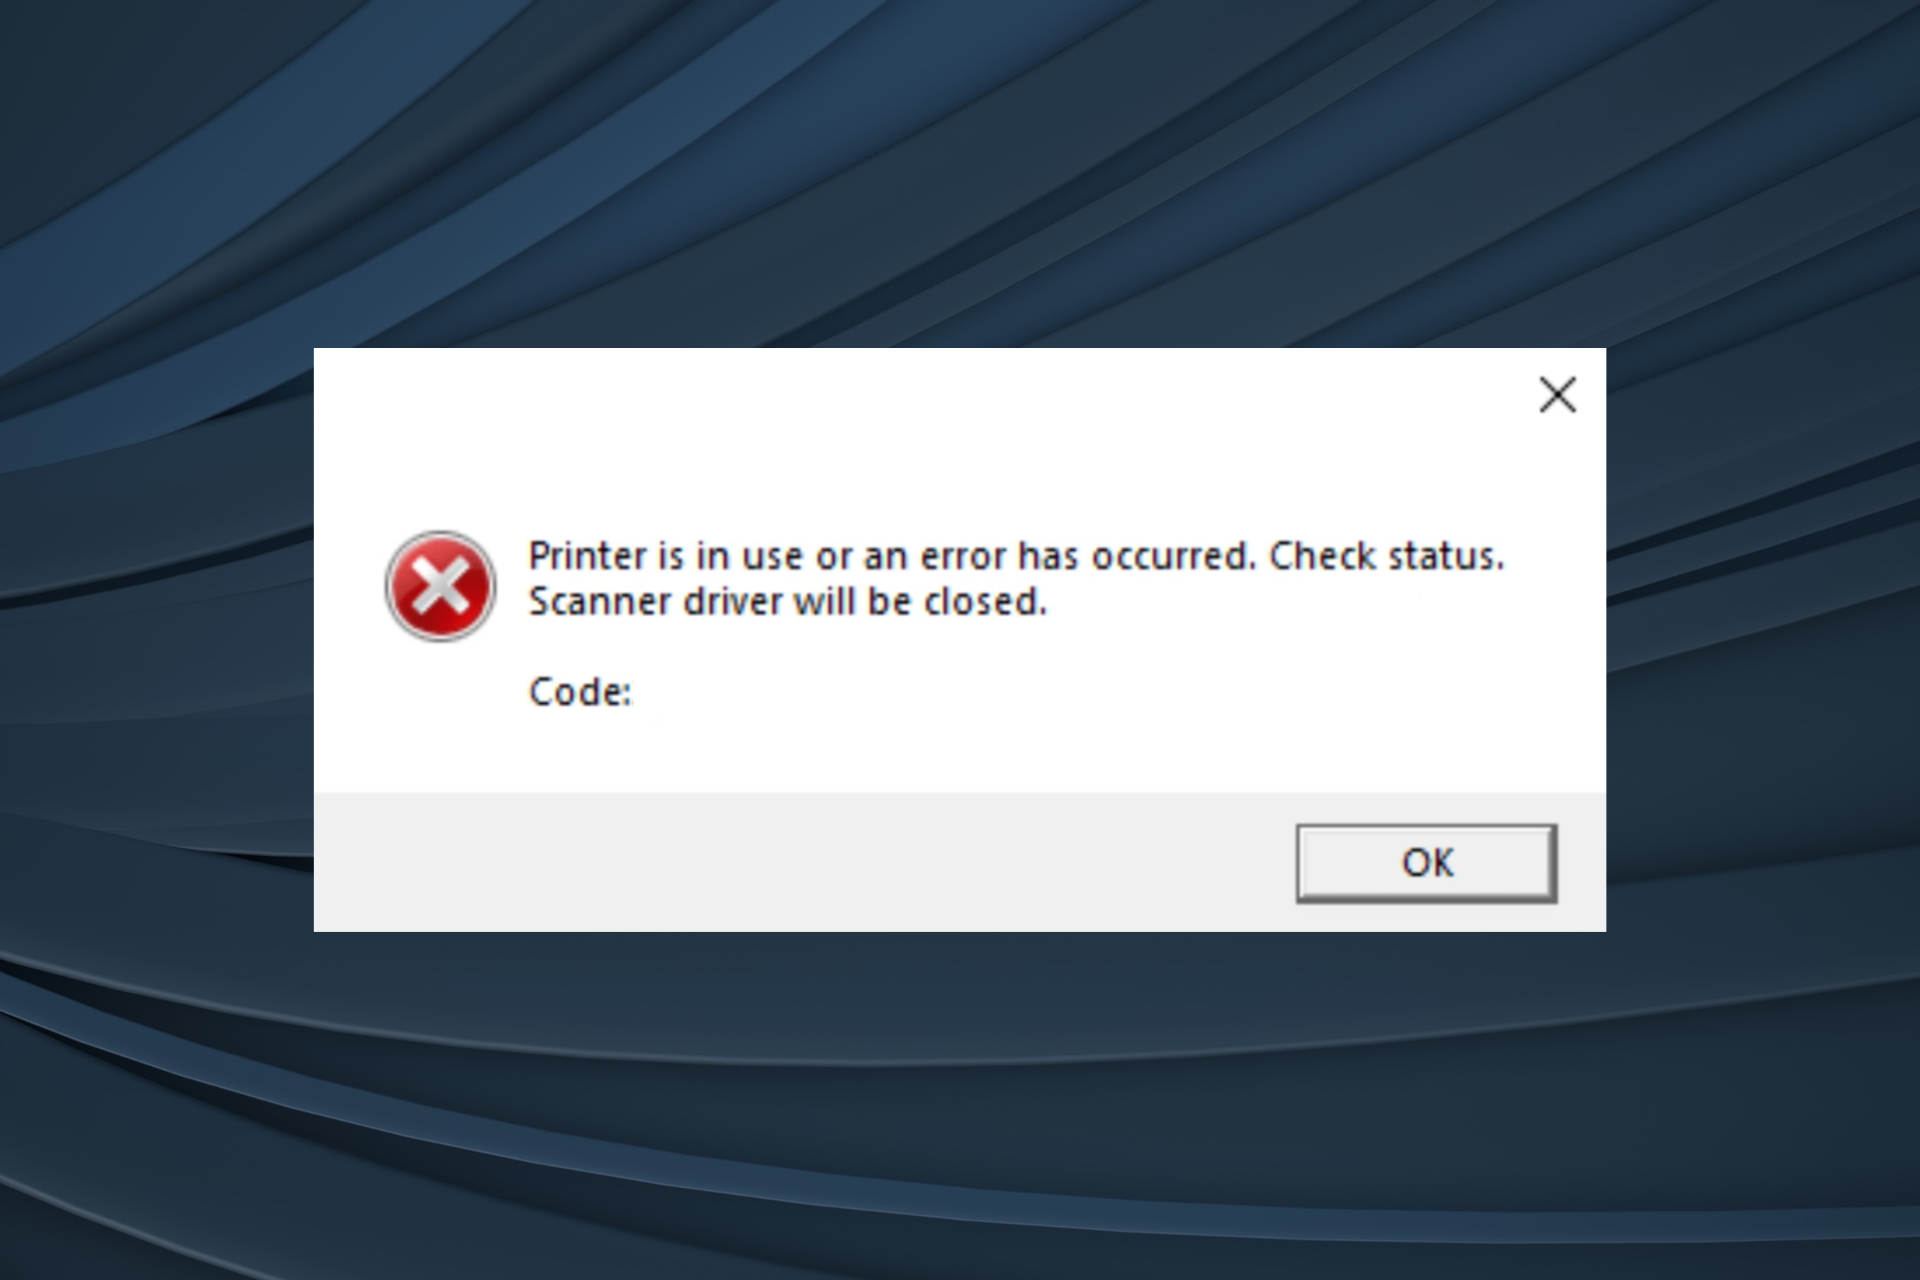 fix printer in use error